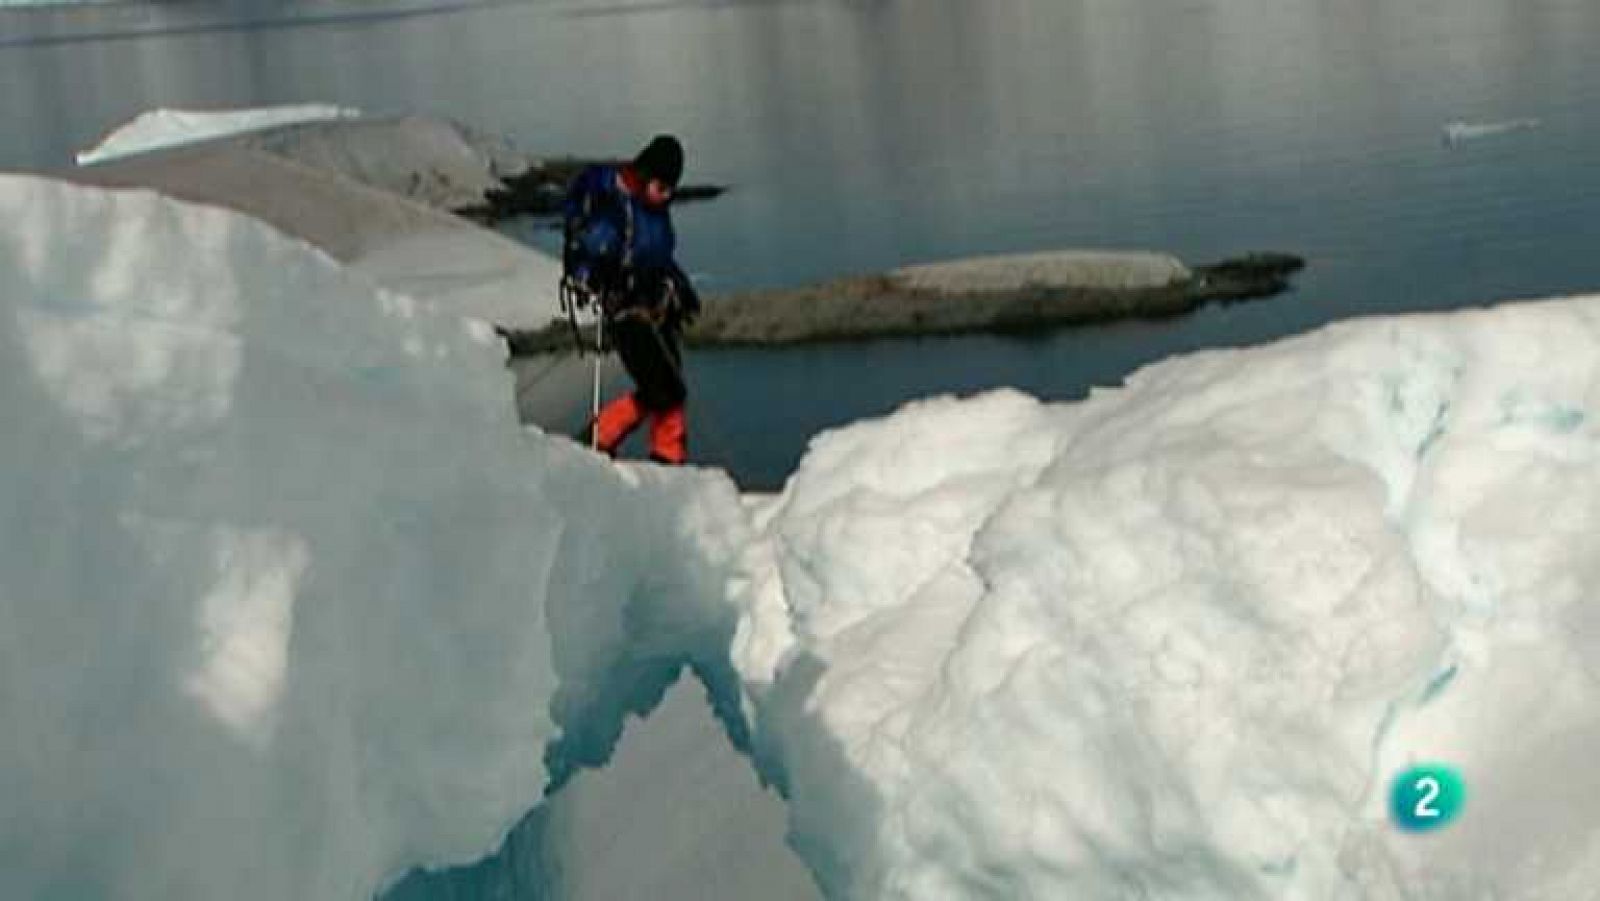 Al filo de lo imposible - En el confín de la Tierra, 5 (Expedición a la Antártida)